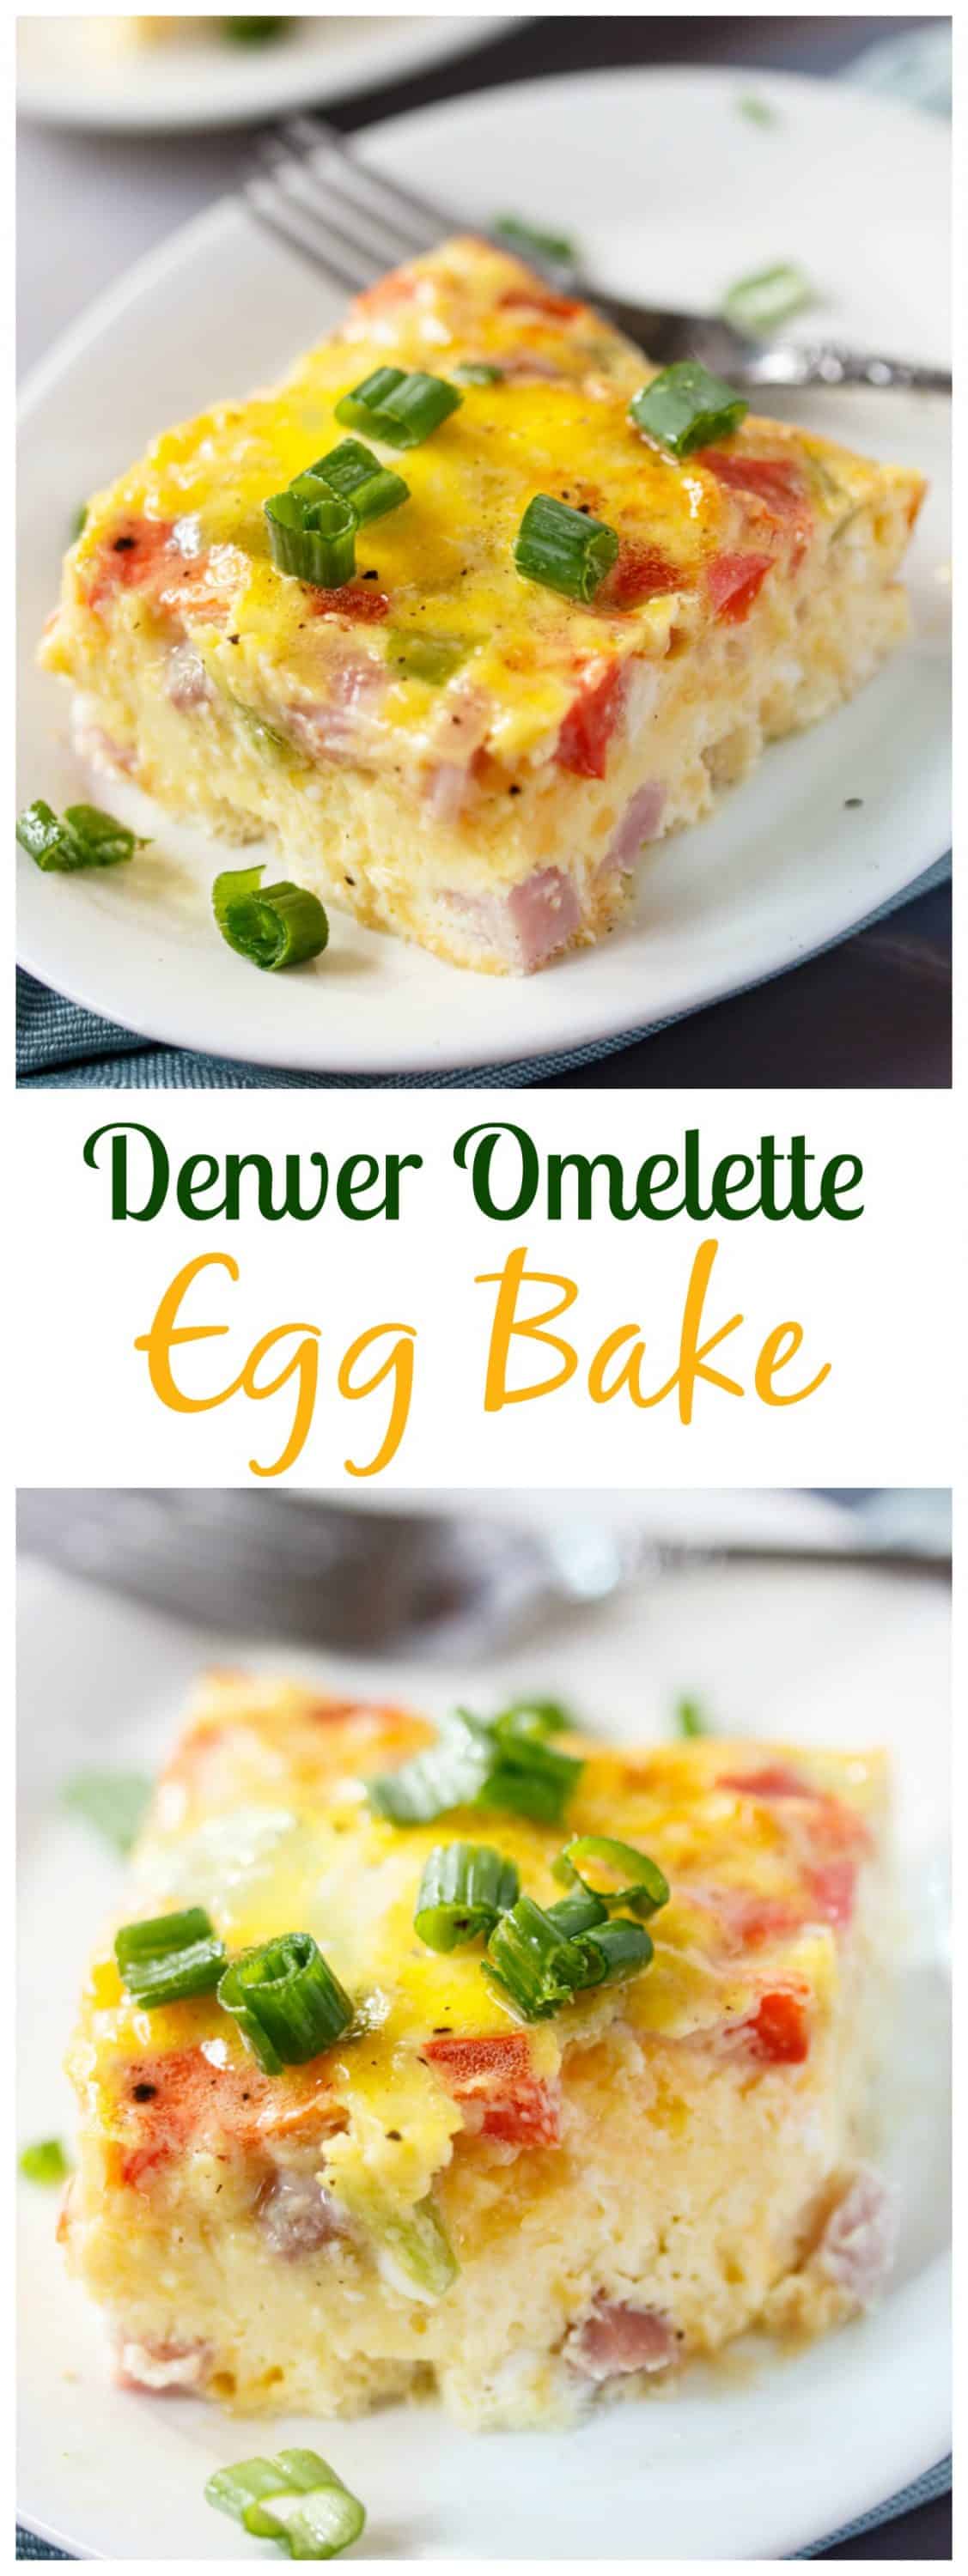 denver-omelette-egg-bake